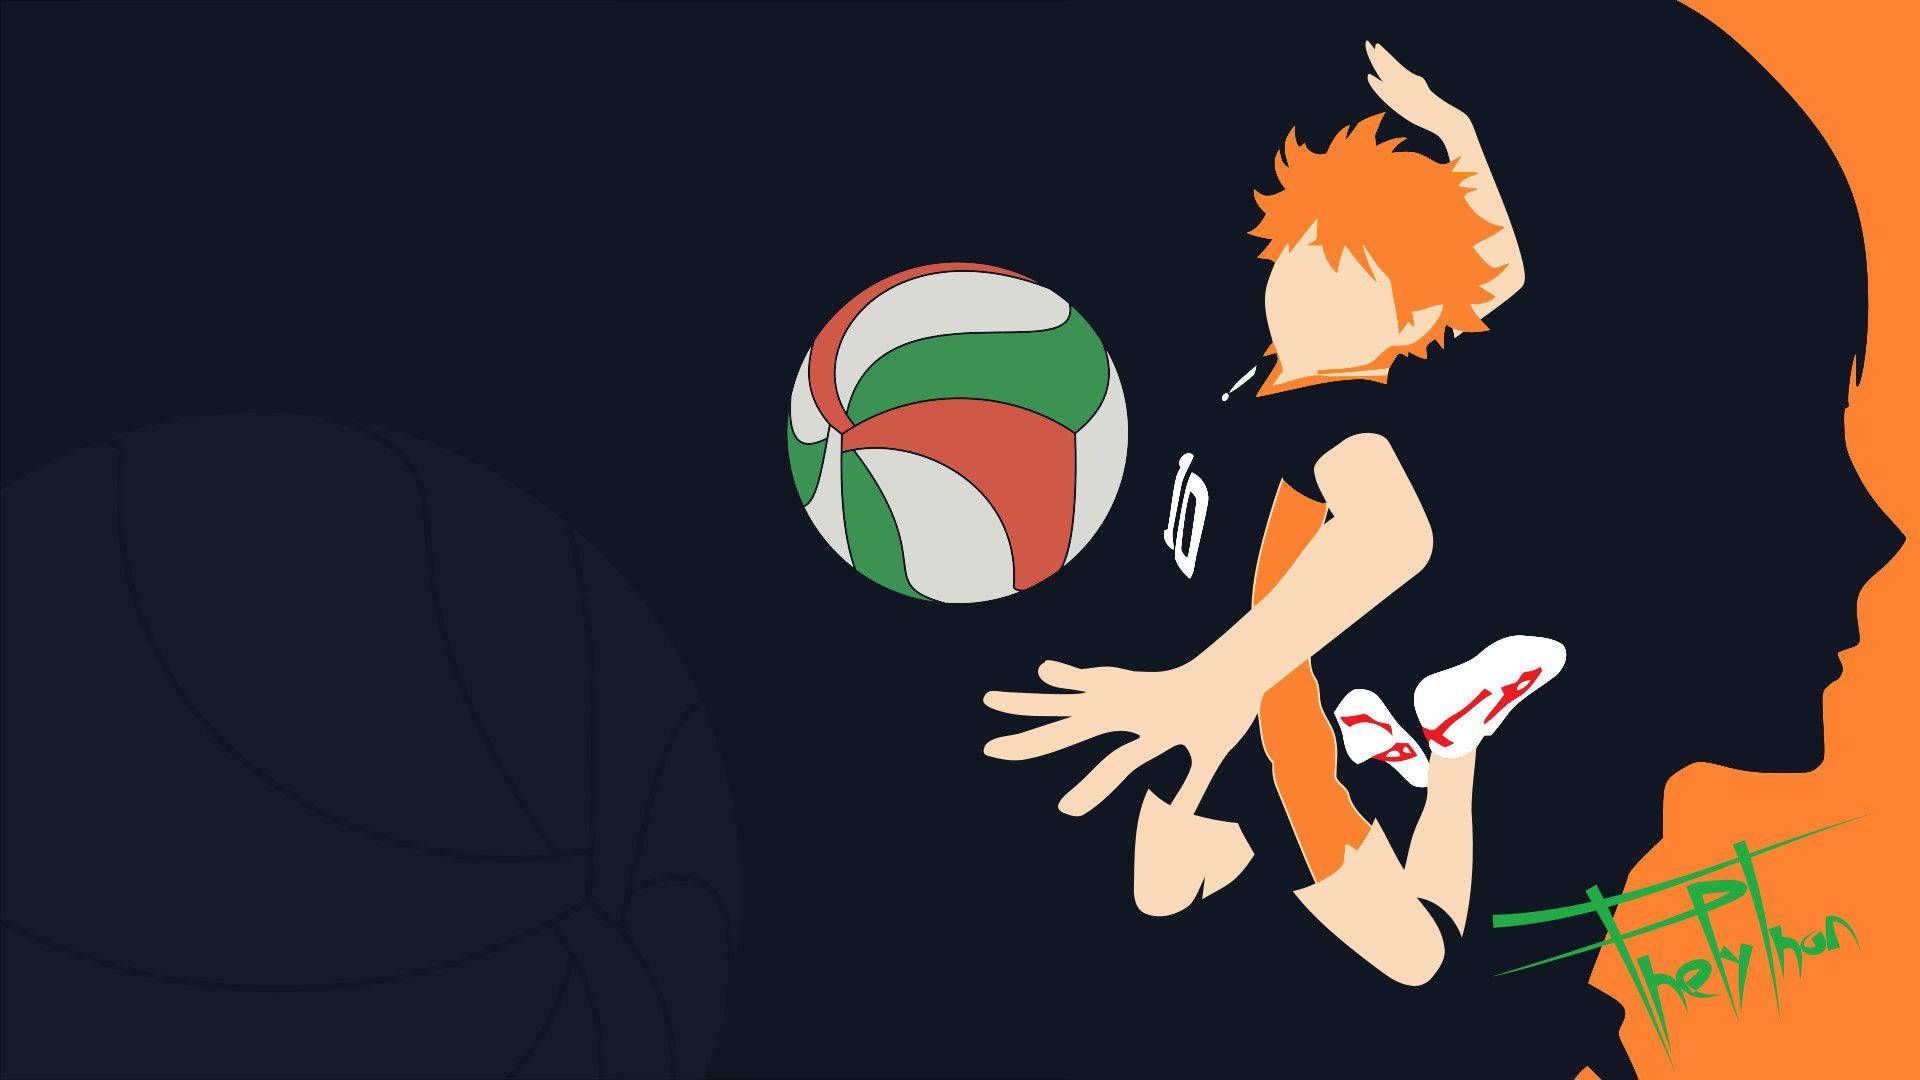 Hinata Shouyou, den passionerede volleyballspiller bestemt til at nå sine drømme. Wallpaper